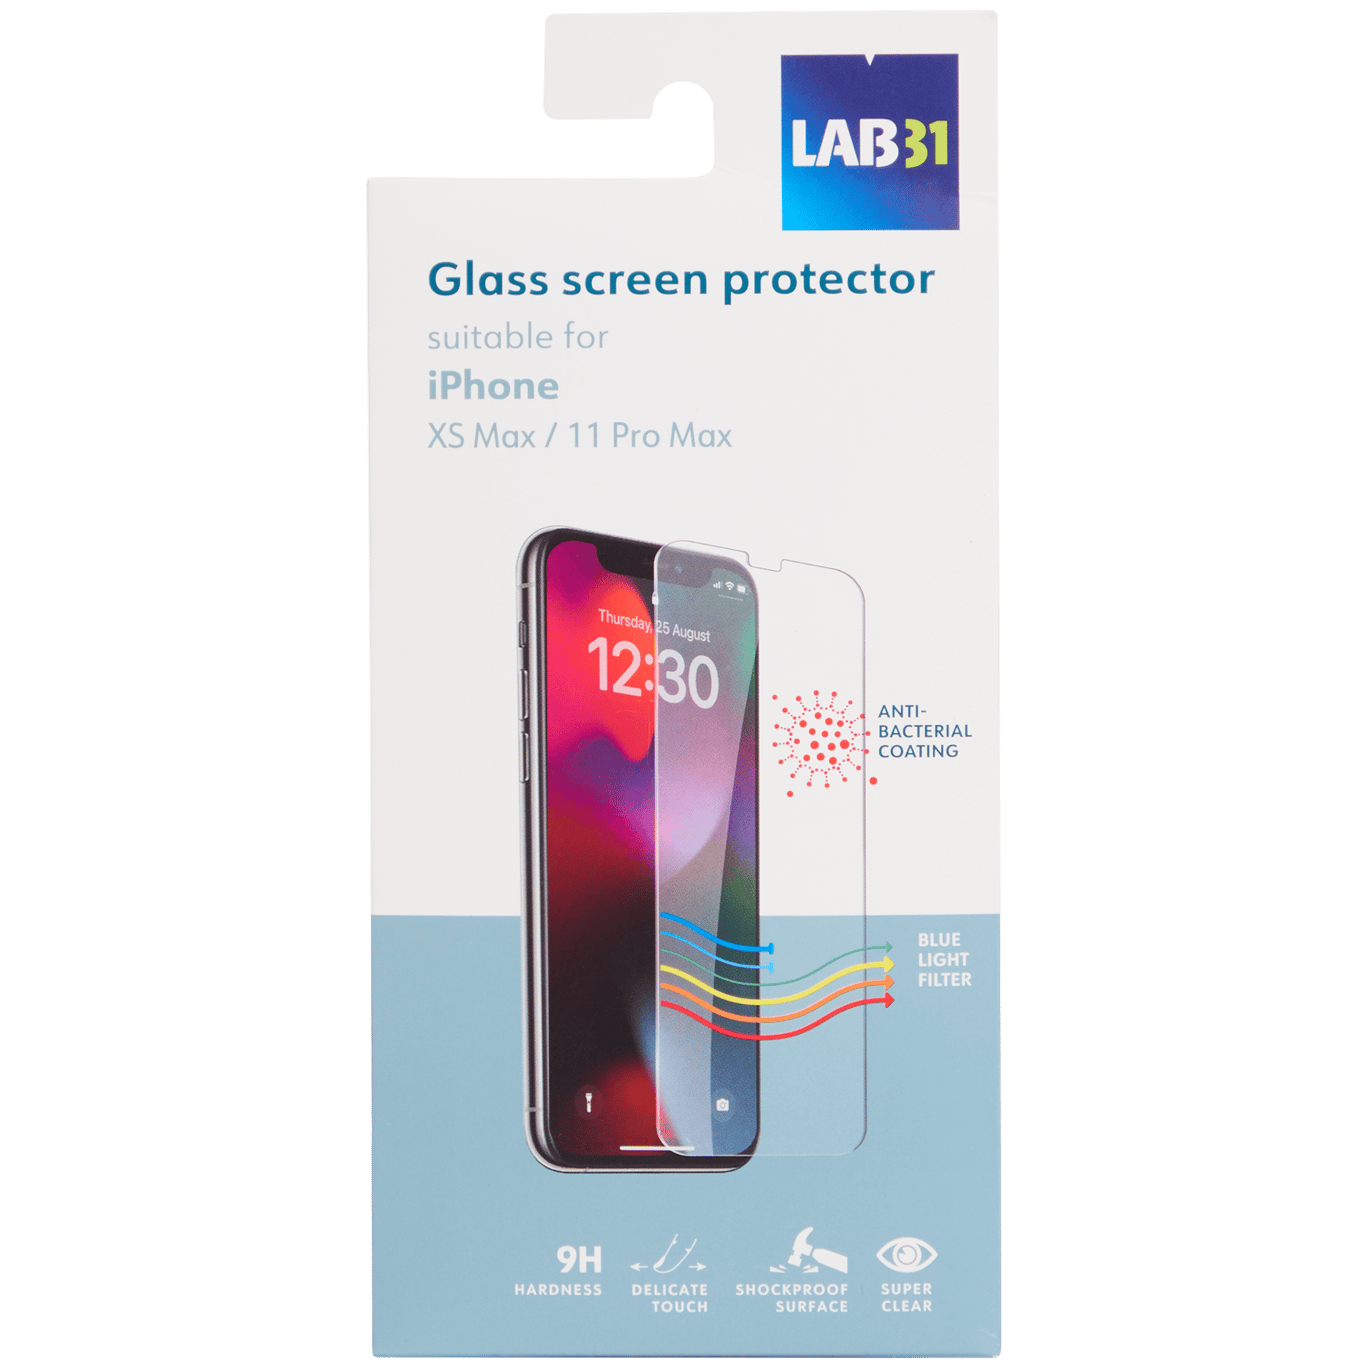 Protector de pantalla para smartphone Lab31